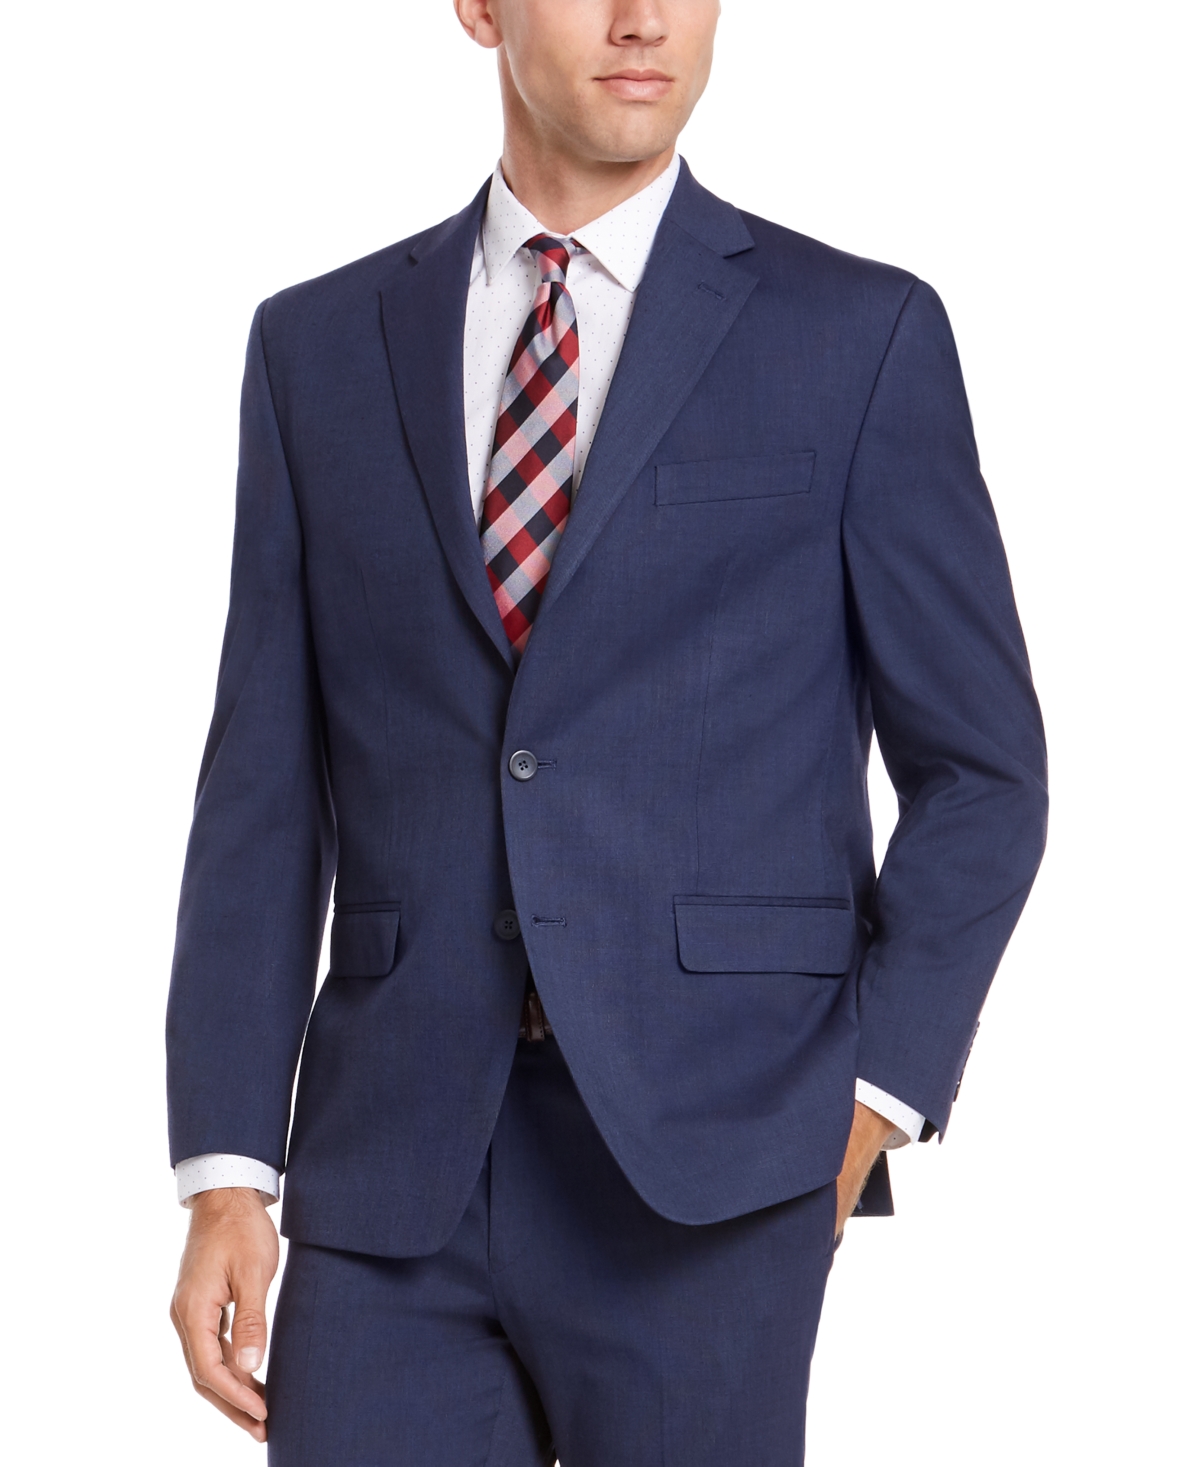 Men's Classic-Fit Suit Jackets - Charcoal Sharkskin